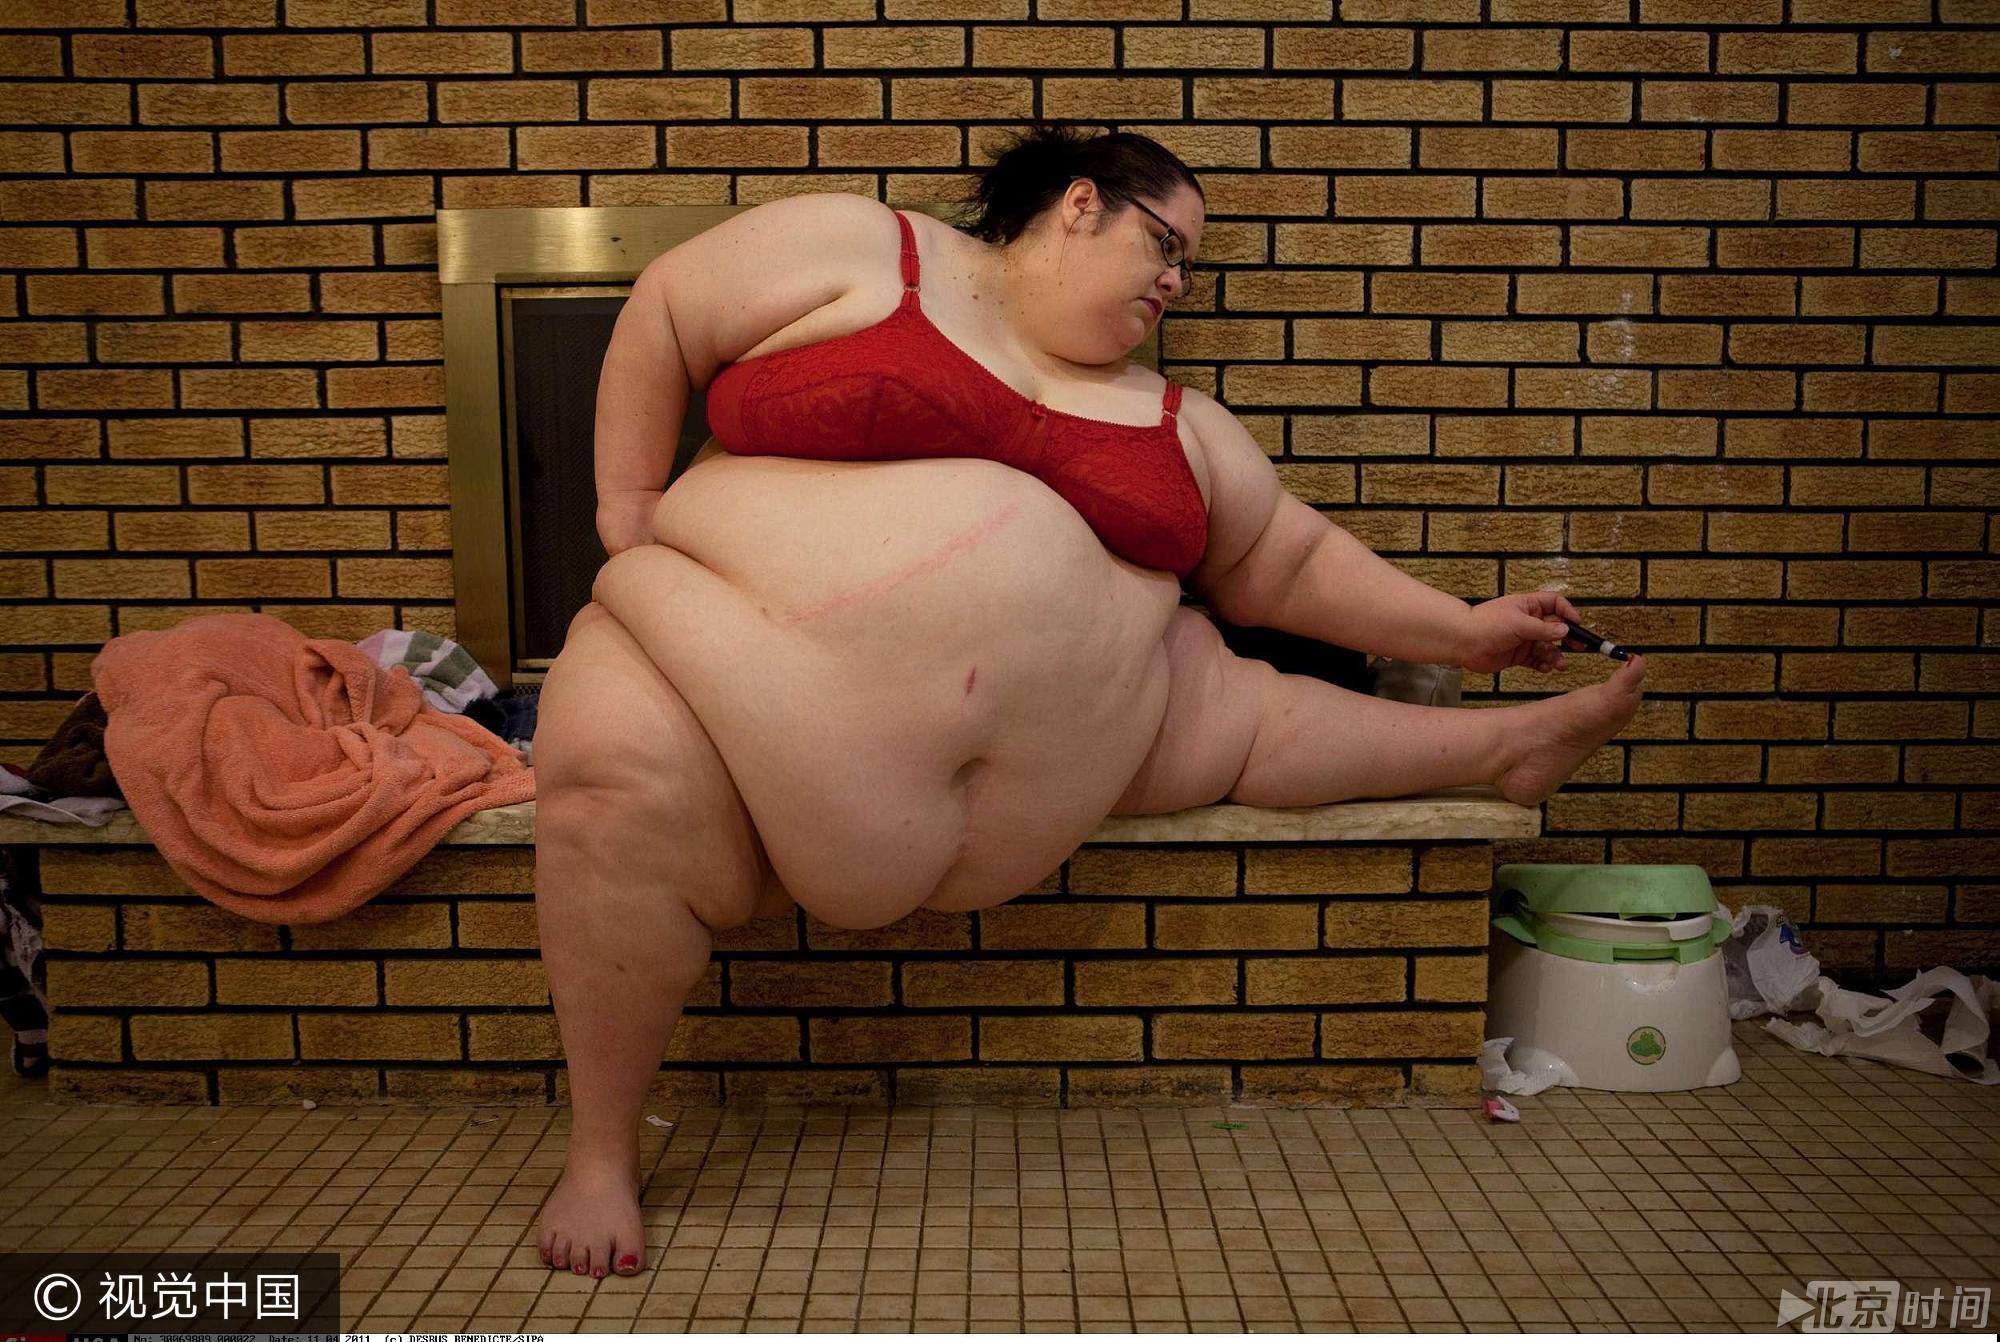 2011年4月11日，美国新泽西州，44岁的美国妇女唐娜·辛普森体重接近600磅（大约540斤），希望体重继续增加就有可能成为世界上最胖的女性。实际上，唐娜已经拥有“世界第一”的称谓，2007年她以532磅（约480斤）的体重诞下女儿，成为世界上最胖的母亲。另外，唐娜还经营了自己的网站officialdonnasimpson.com，粉丝需要付钱观看她吃饭的视频。